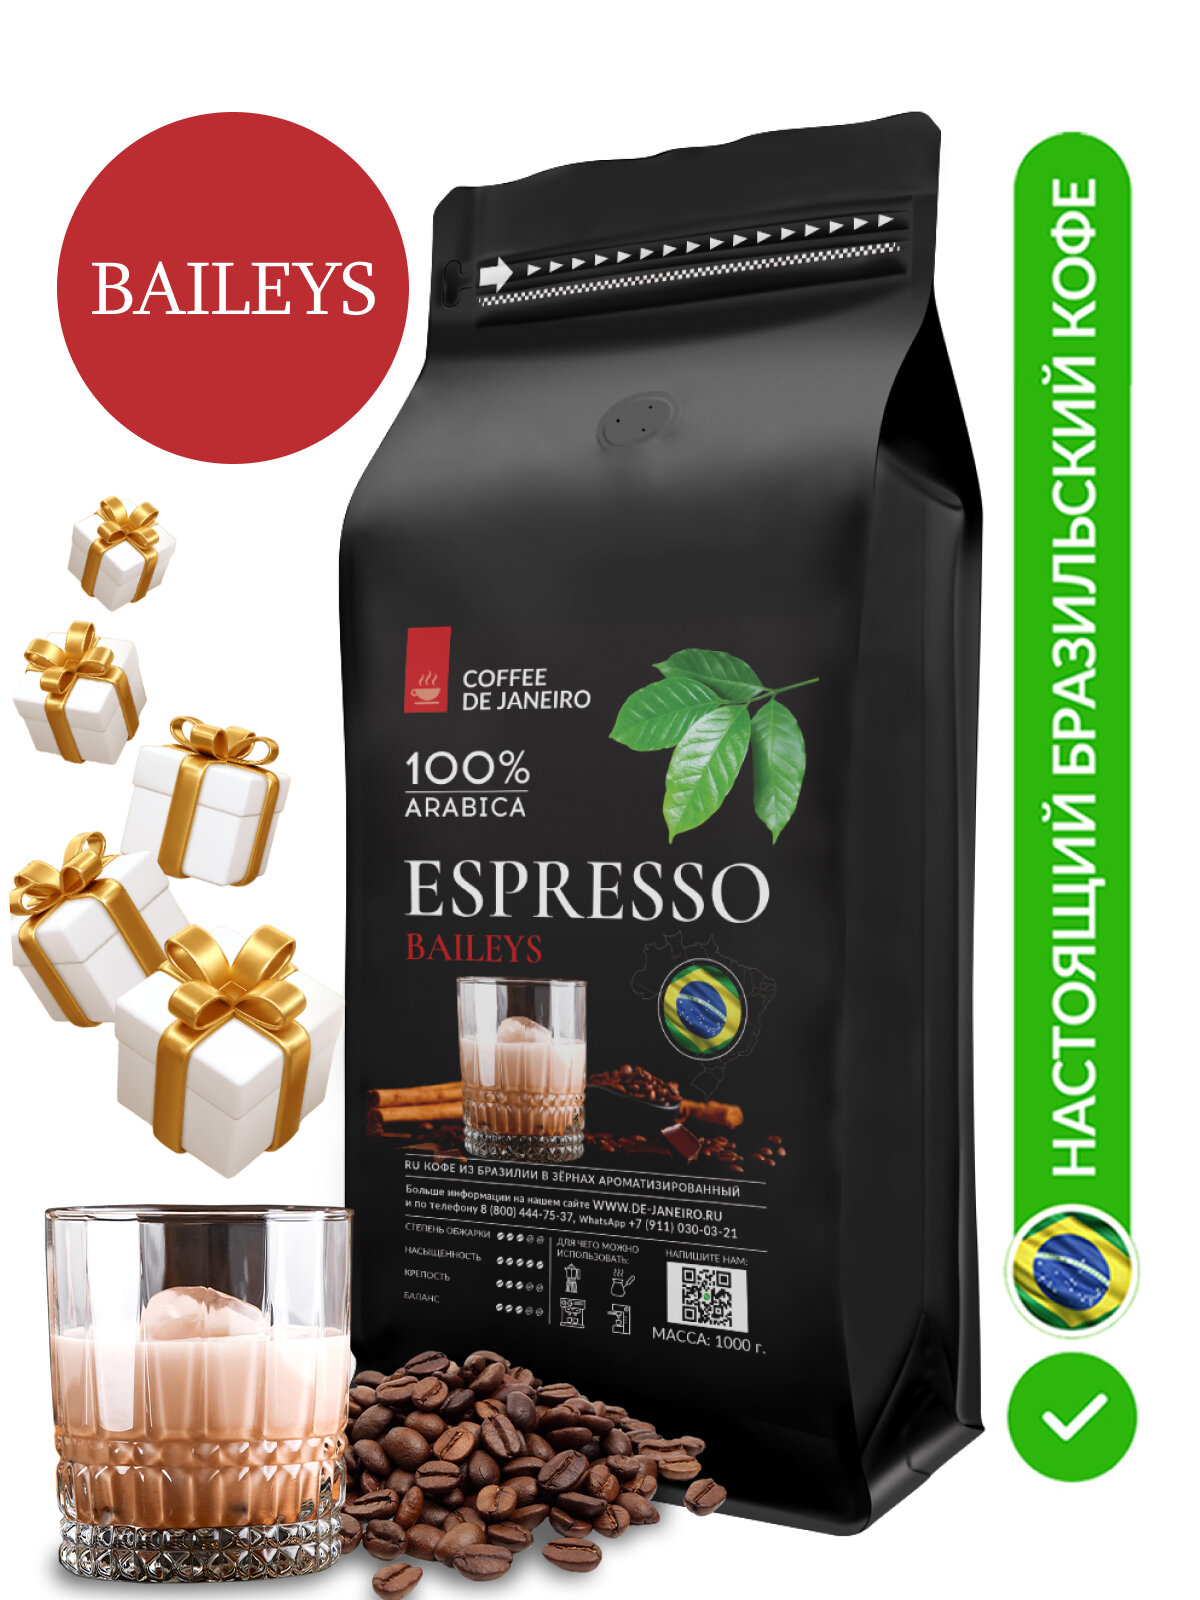 Кофе в зернах DE JANEIRO (ДЕ жанейро) Espresso Baileys, 100% Арабика, кофе зерновой, Бразилия